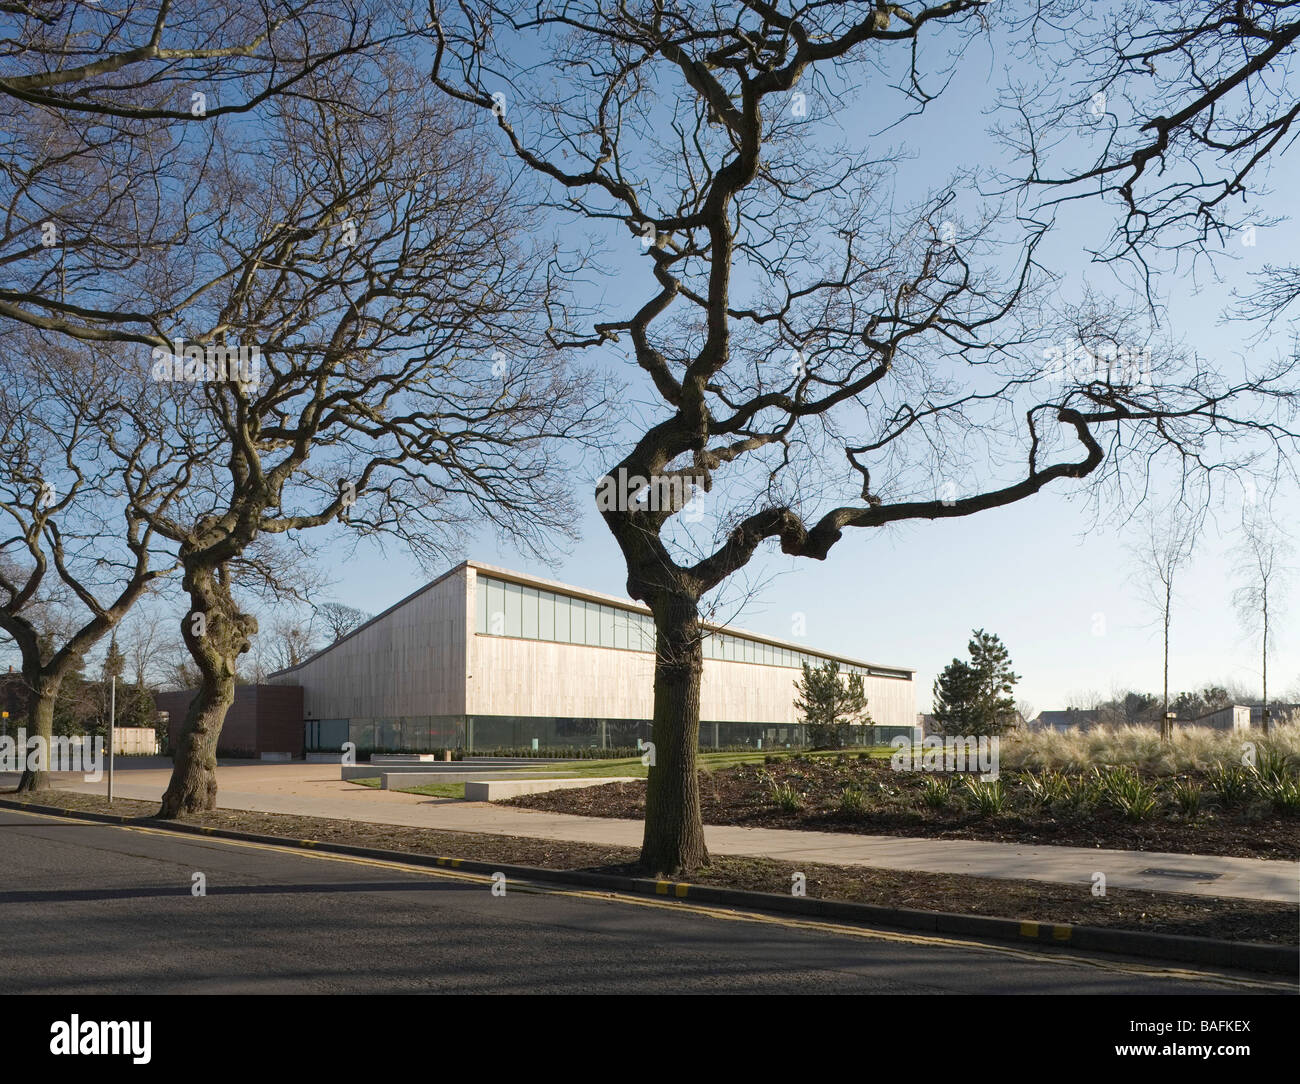 Formby piscina, Formby, Regno Unito, Feilden Clegg Bradley Architects, Formby piscina vista generale con alberi. Foto Stock